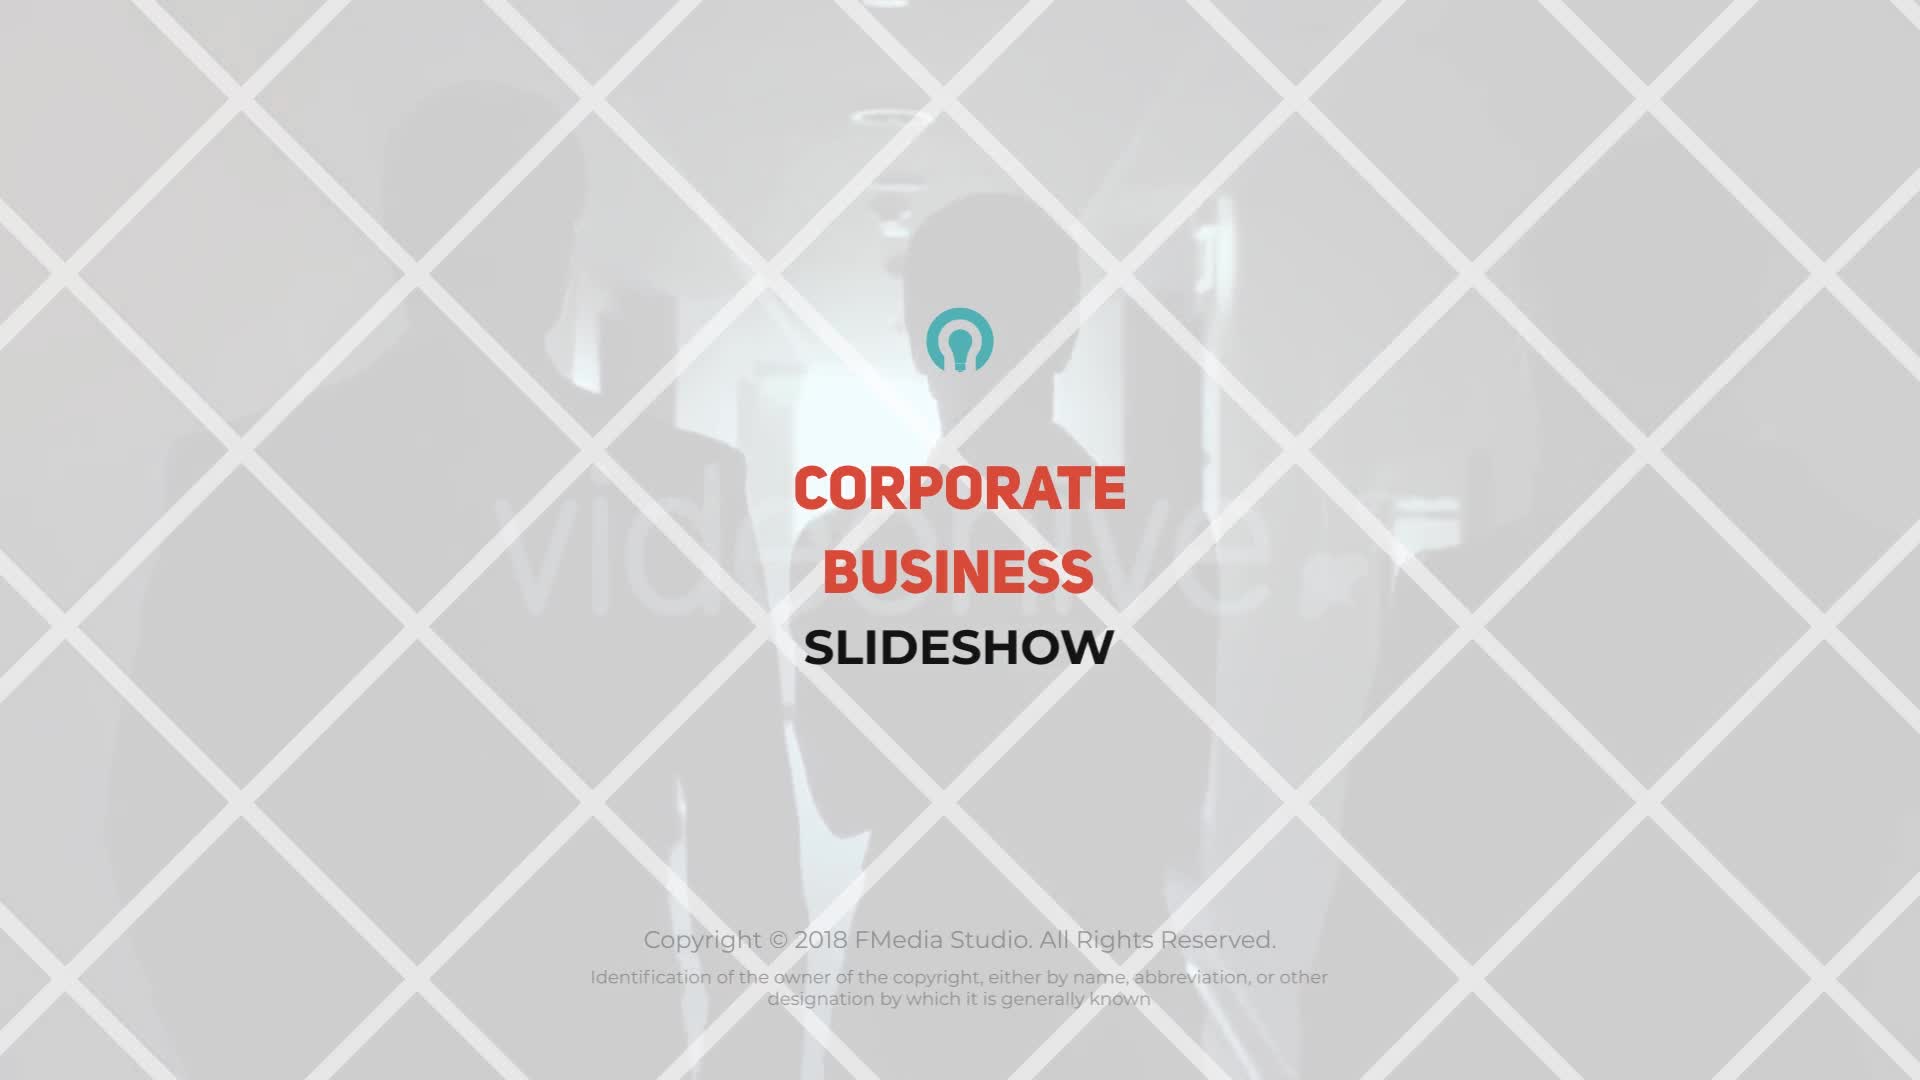 Corporate Business Slideshow – Premiere Pro Videohive 23473440 Premiere Pro Image 1